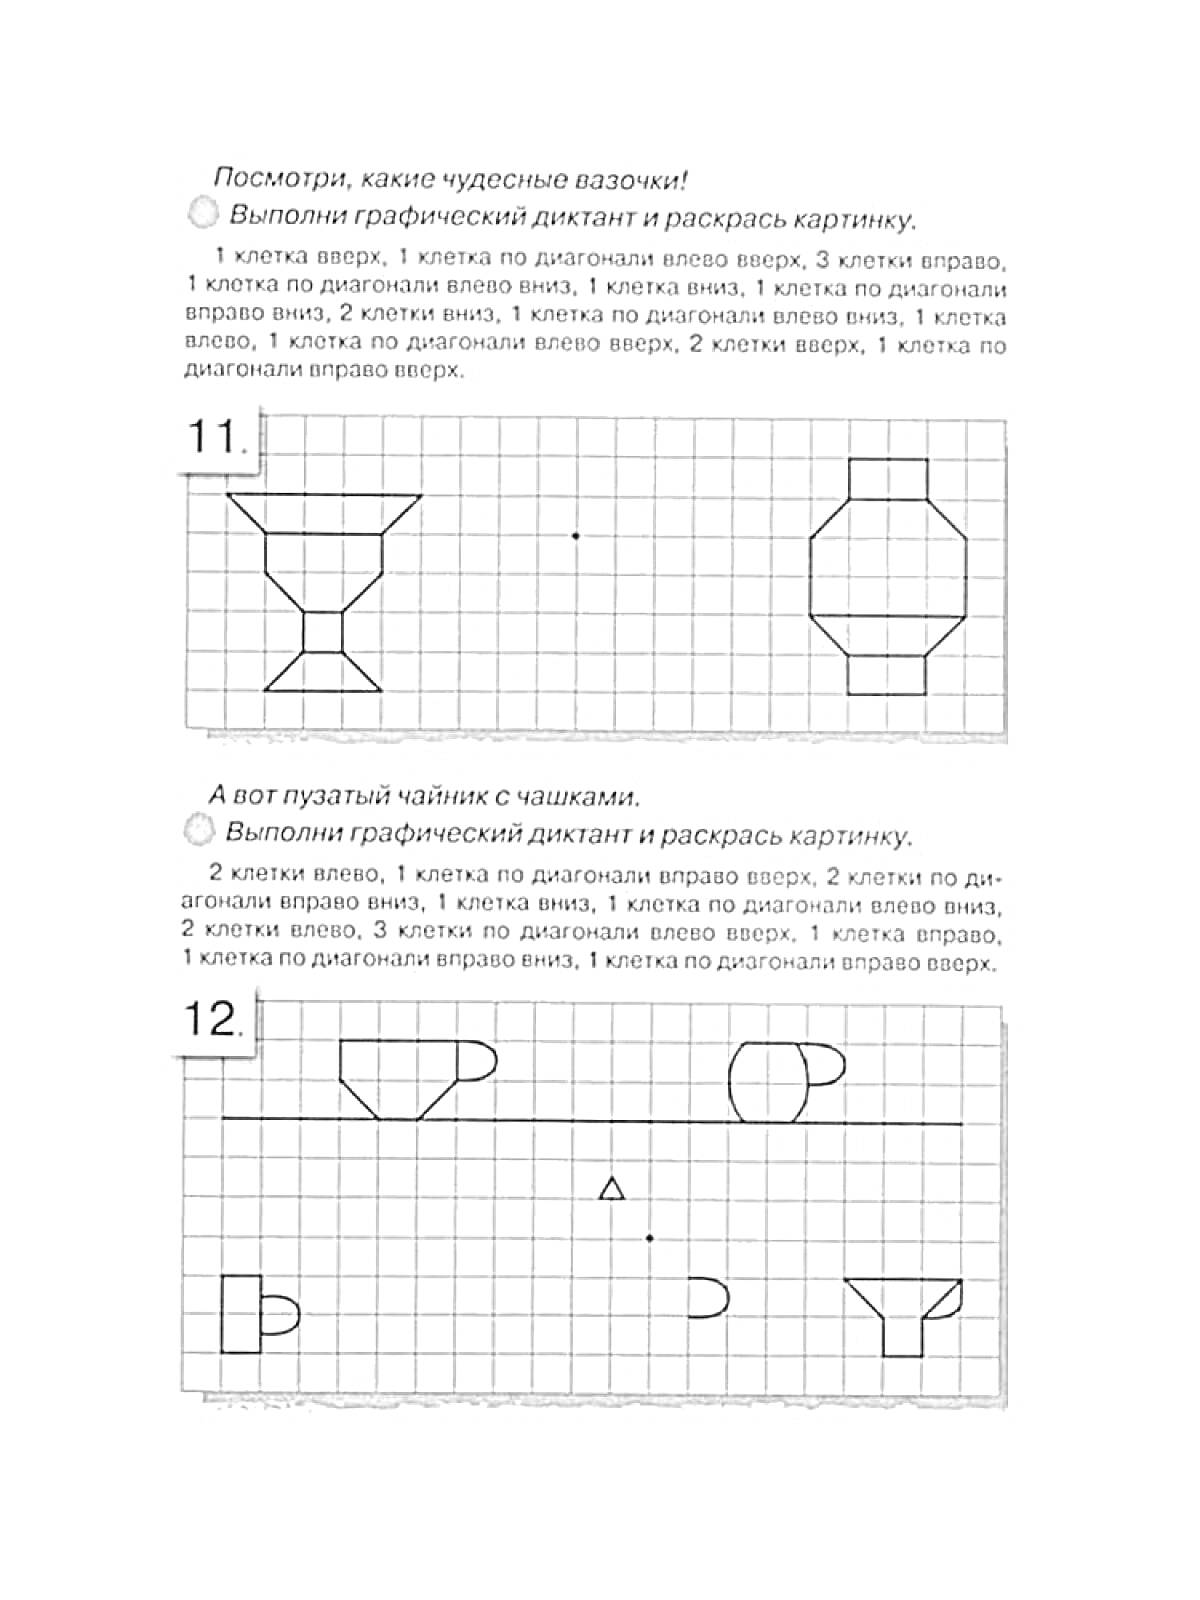 Раскраска Графический диктант - 11: Ваза и шестиугольник, 12: Чашки и треугольник.